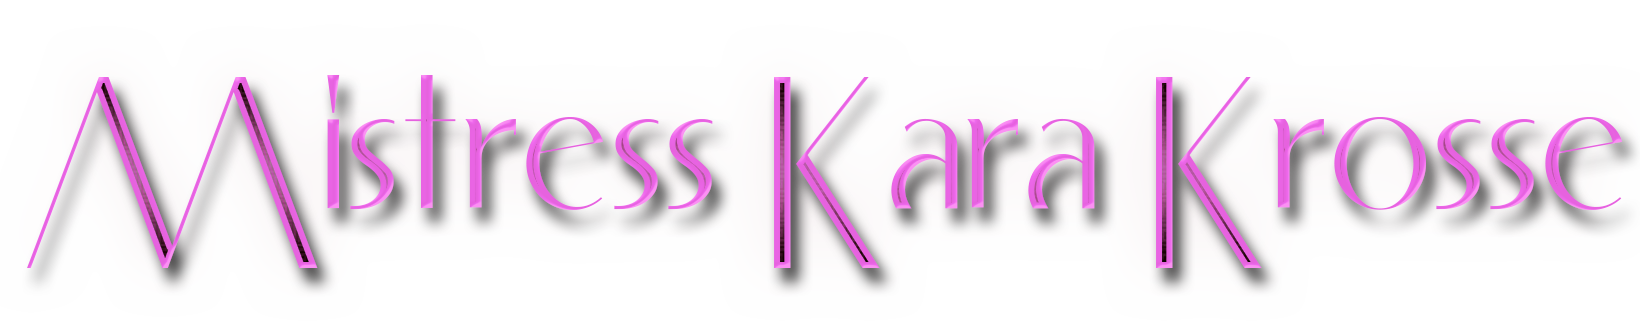 Liverpool Mistress Kara Krosse